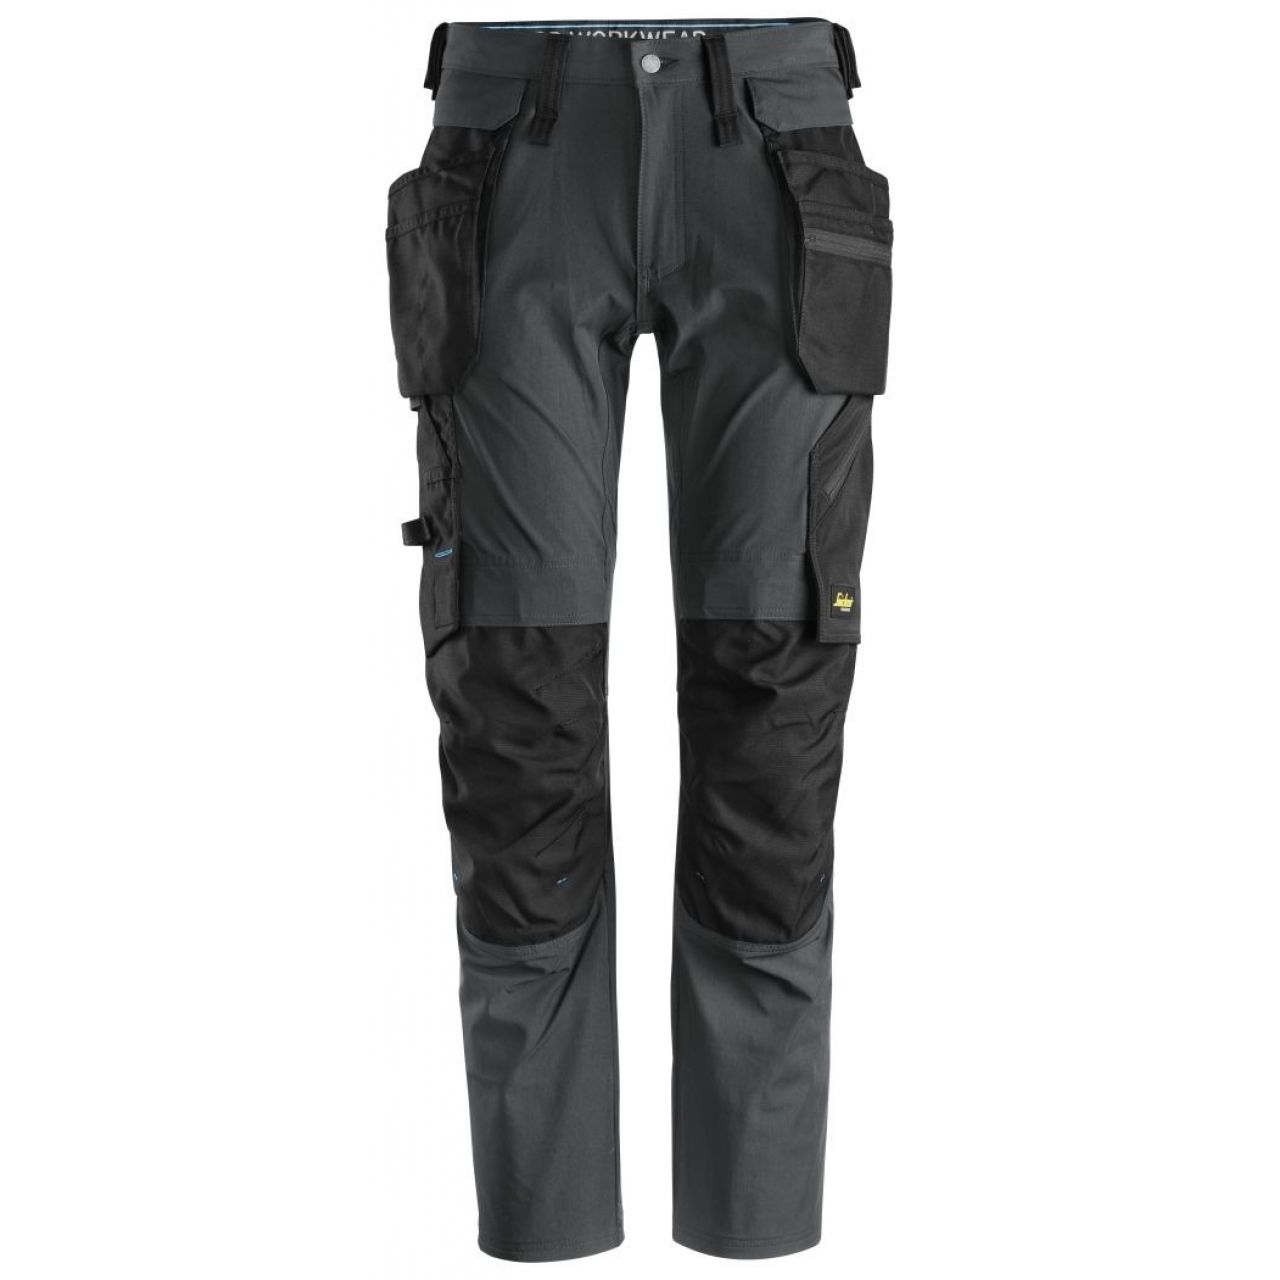 Pantalon + bolsillos flotantes desmontables LiteWork gris acero-negro talla 212